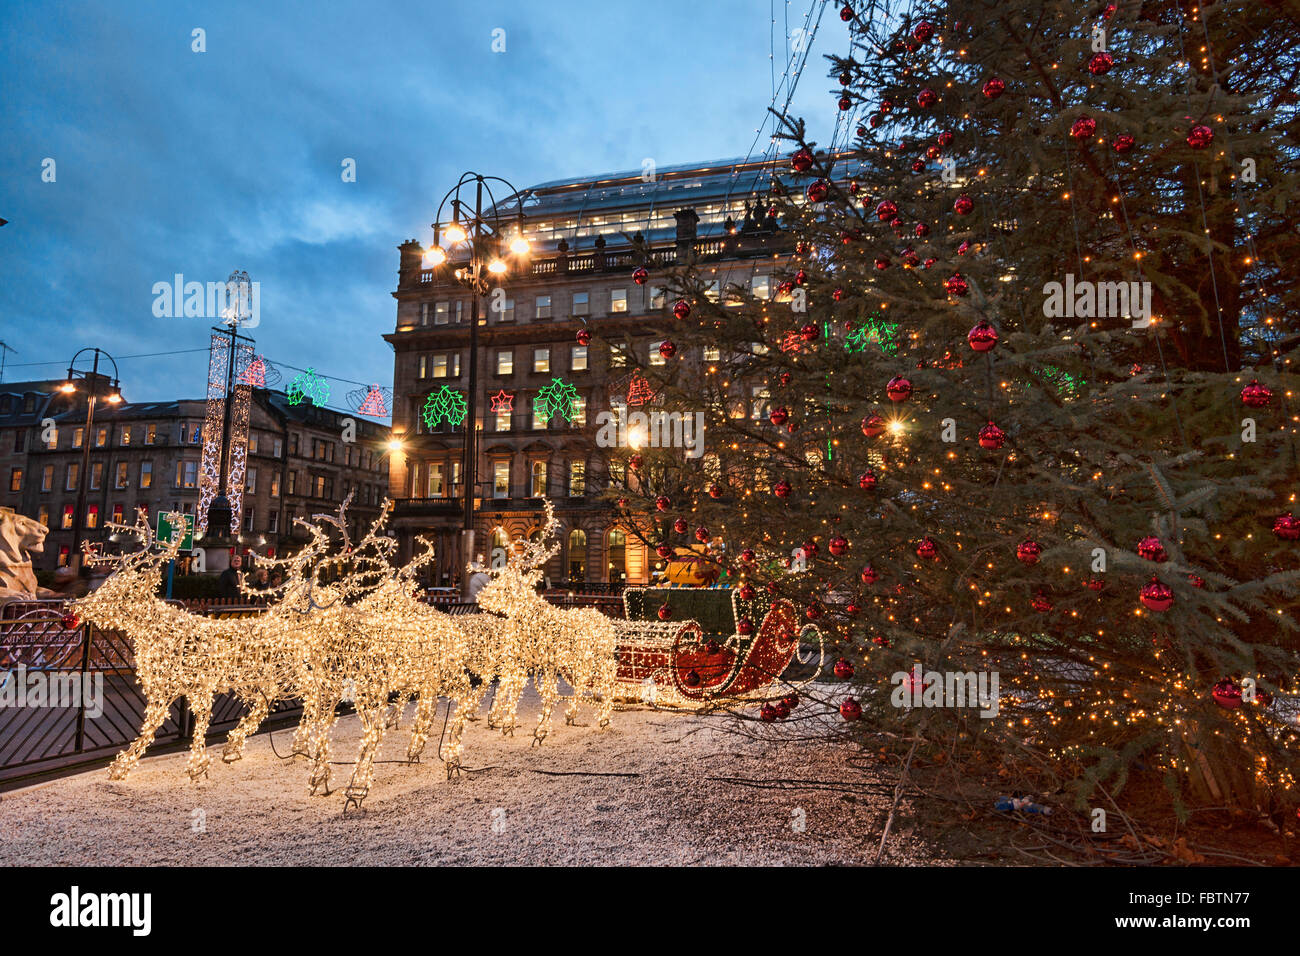 George Square, Glasgow City Chambers, lumières de Noël et décorations, Ecosse, Royaume-Uni Banque D'Images